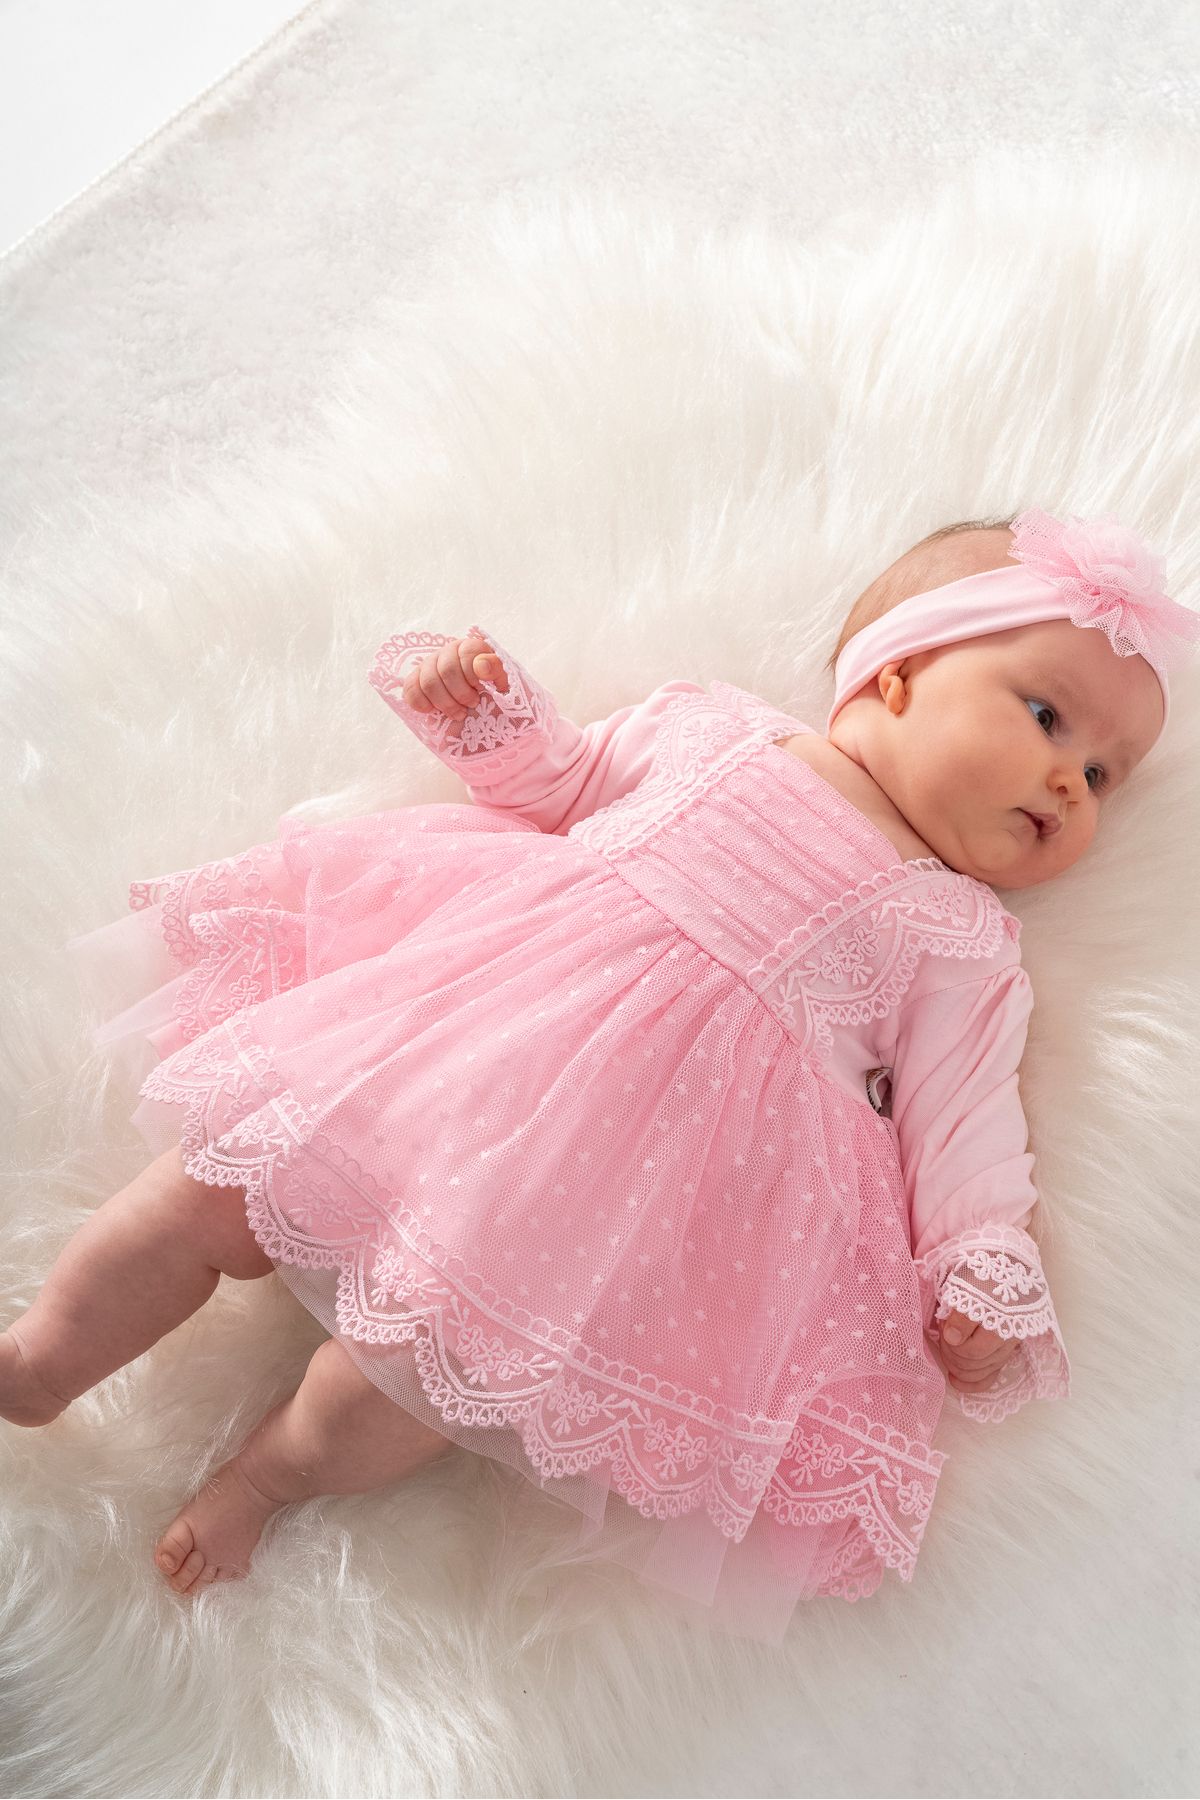 Sitilin Kız Bebek Mevlüt Elbisesi Gelinlik Fransız Dantelli Mevlit Takımı Bebek Mevlütlük Seti